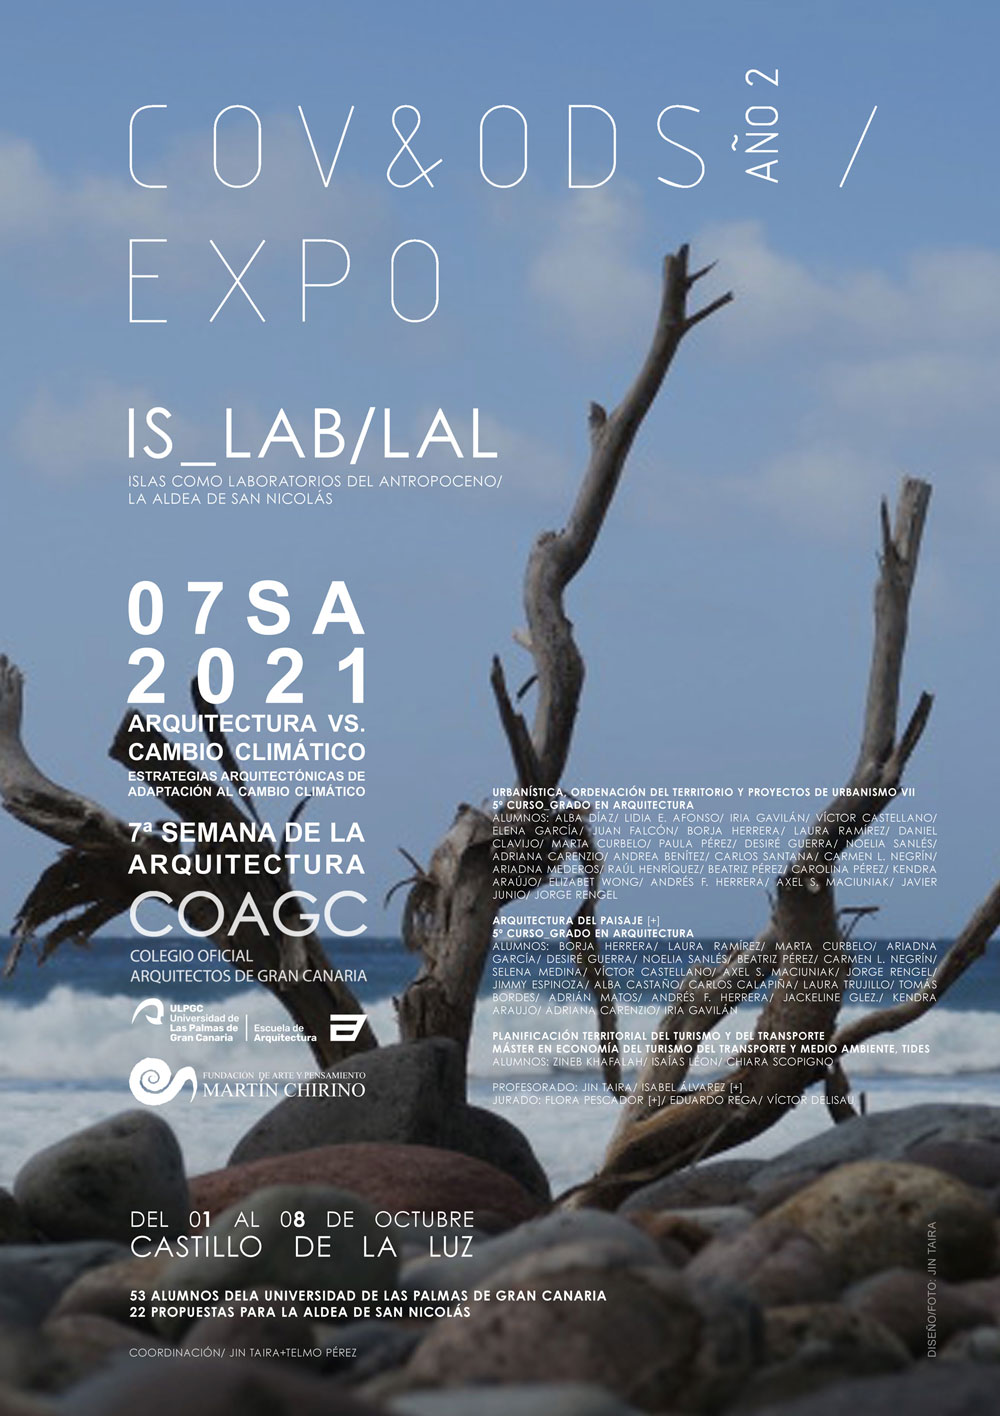 COV&ODS_Año2 / Expo